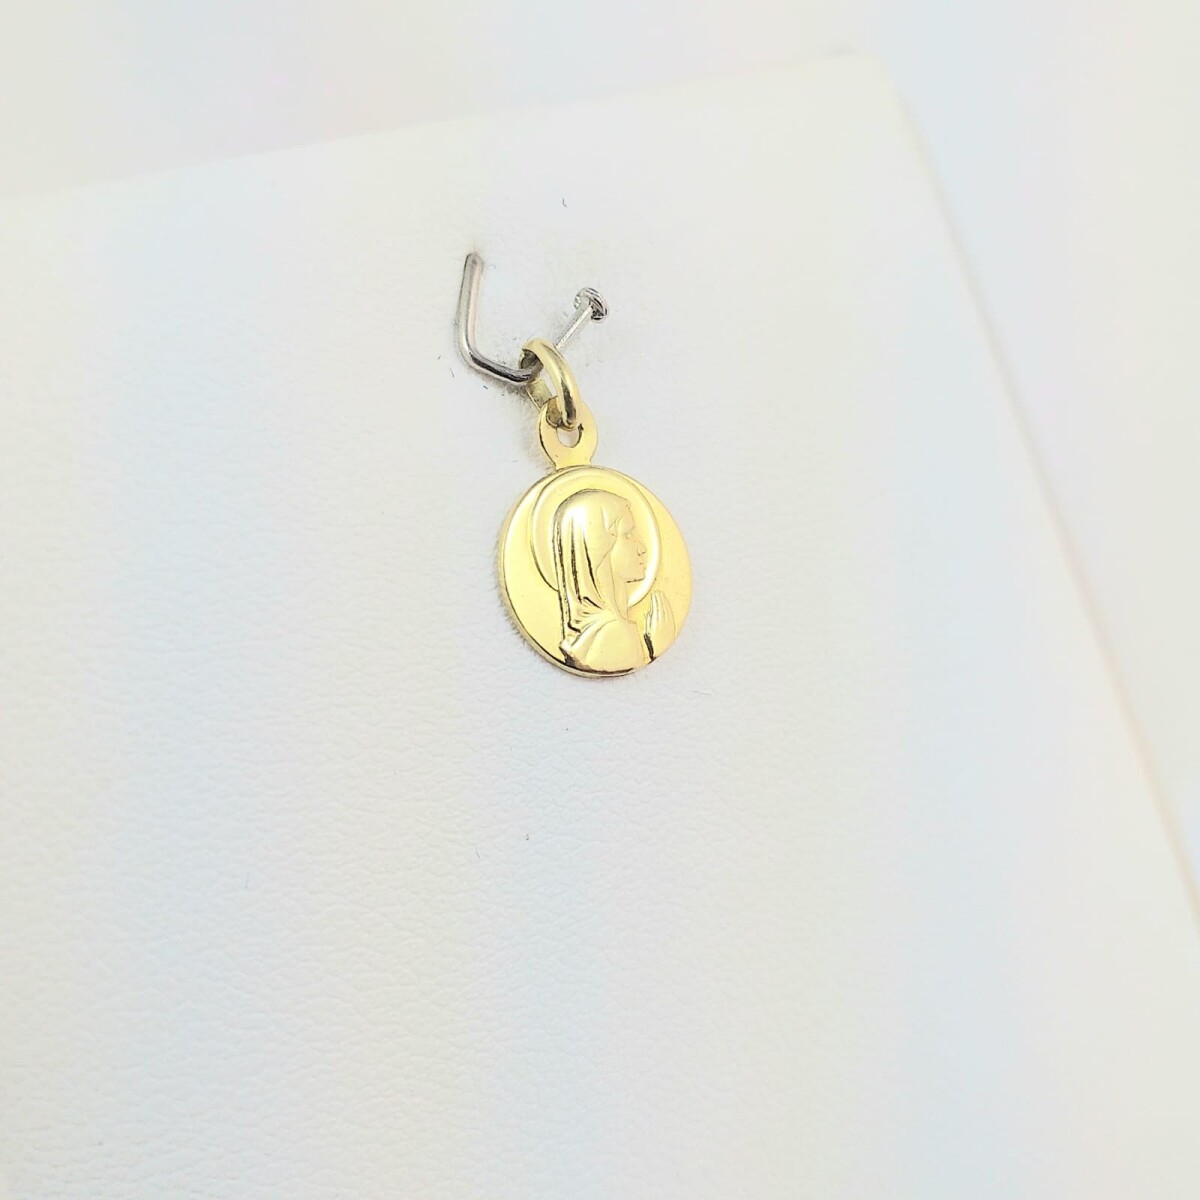 Medalla religiosa de oro 18Ktes, Virgen Niña con manto, diámetro 10mm. 